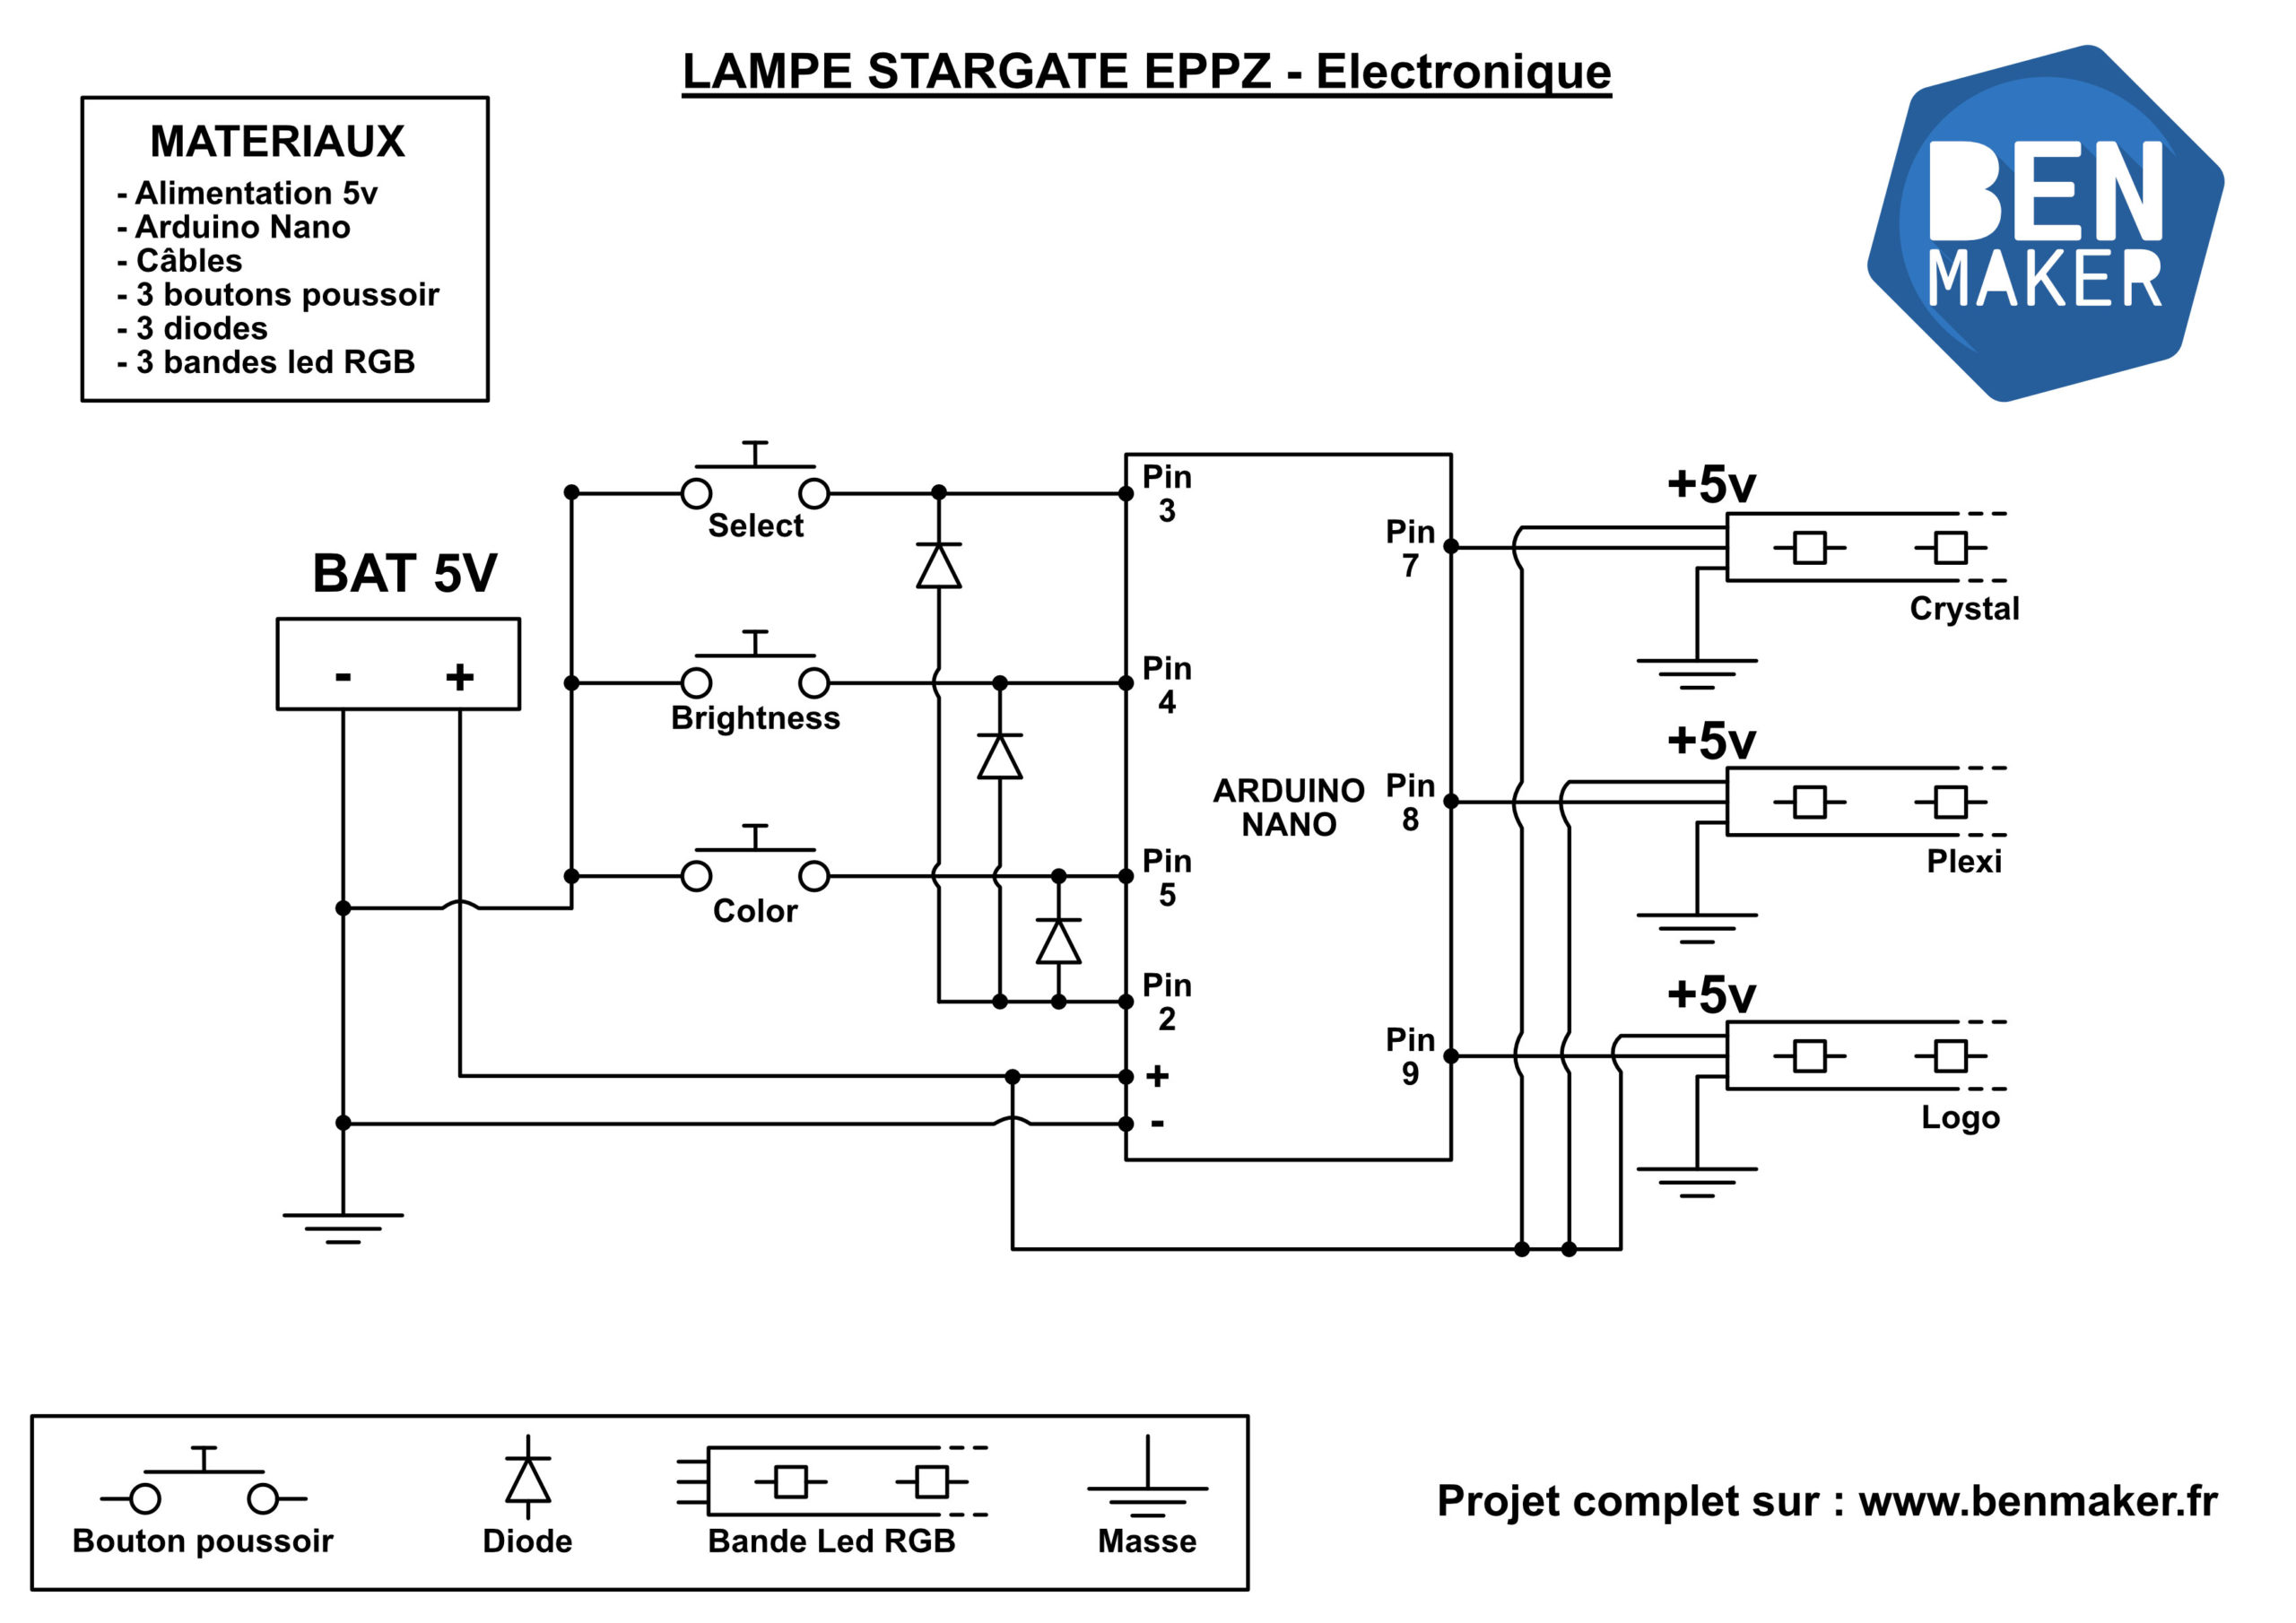 lampe stargate EEPZ - schema electronique